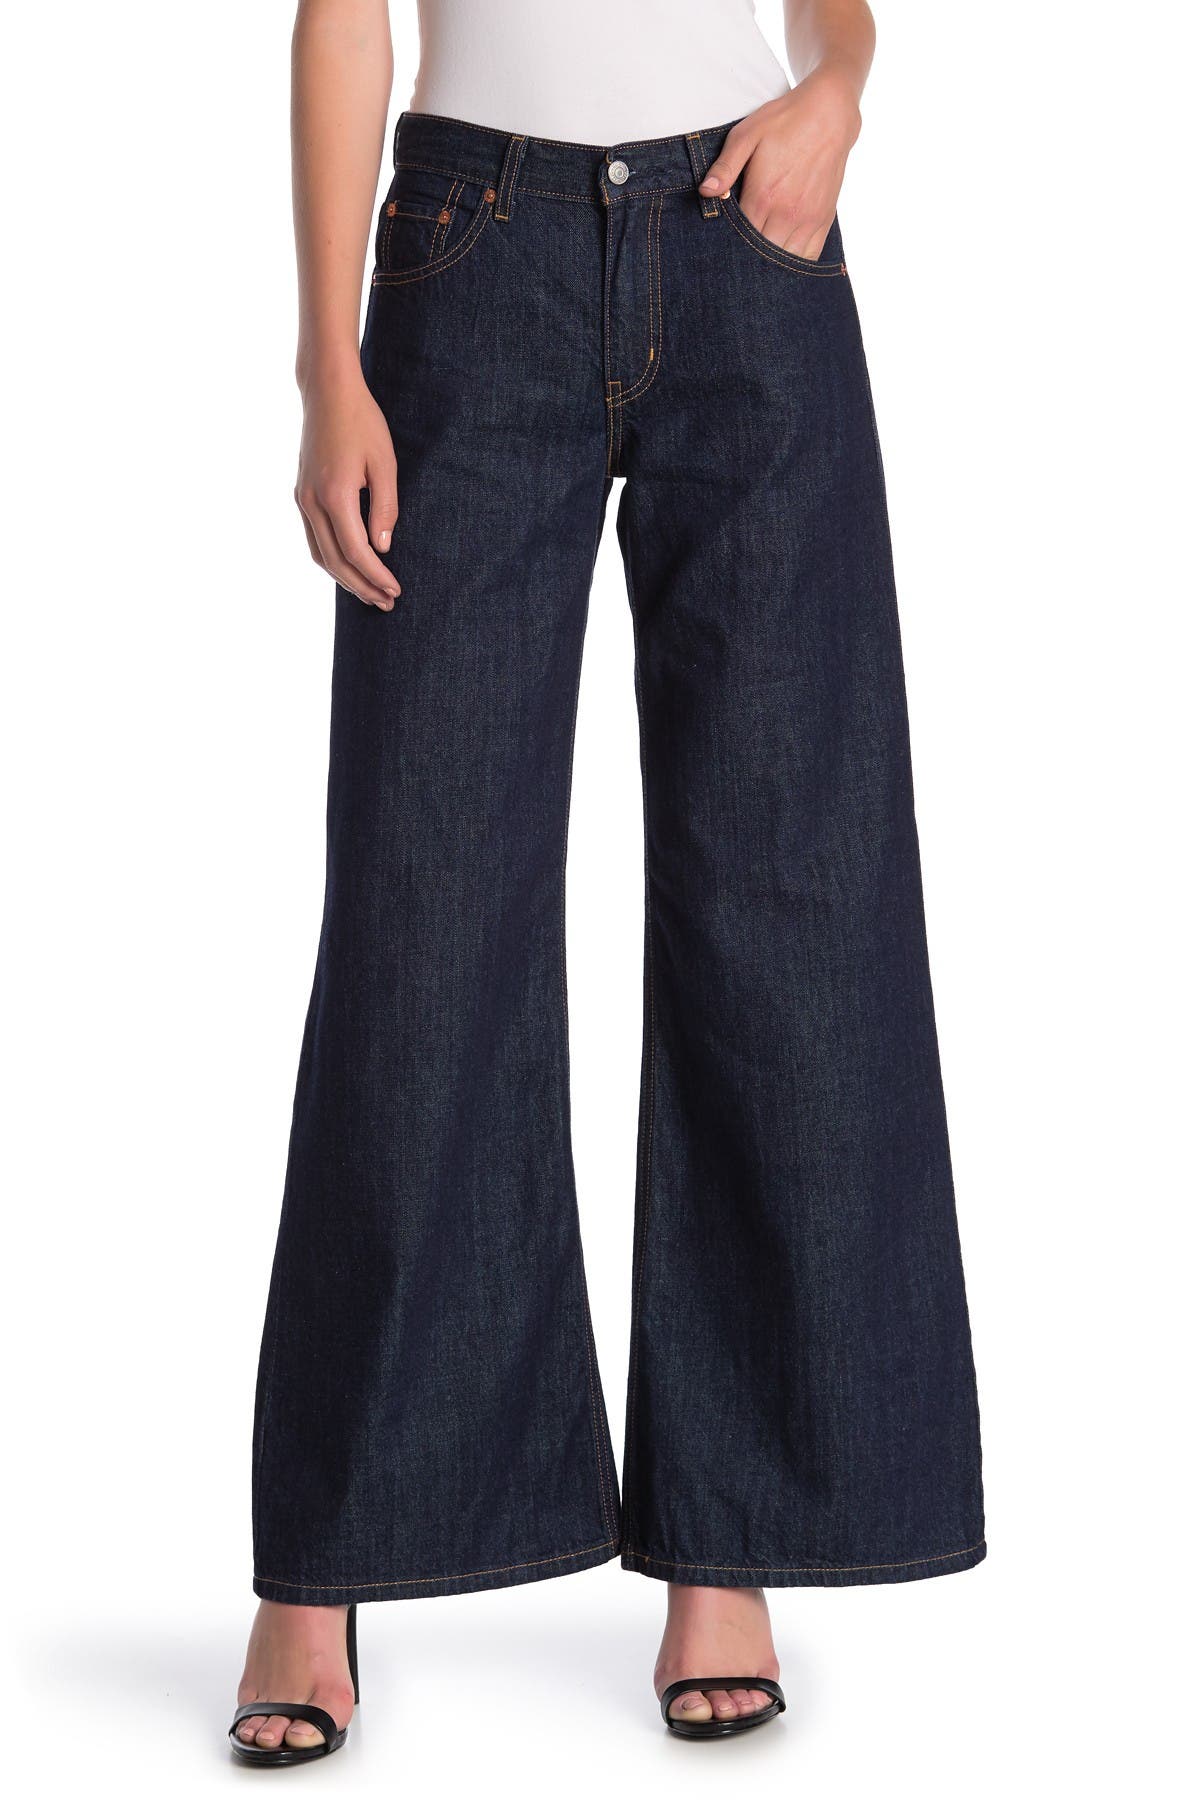 levis massive jeans